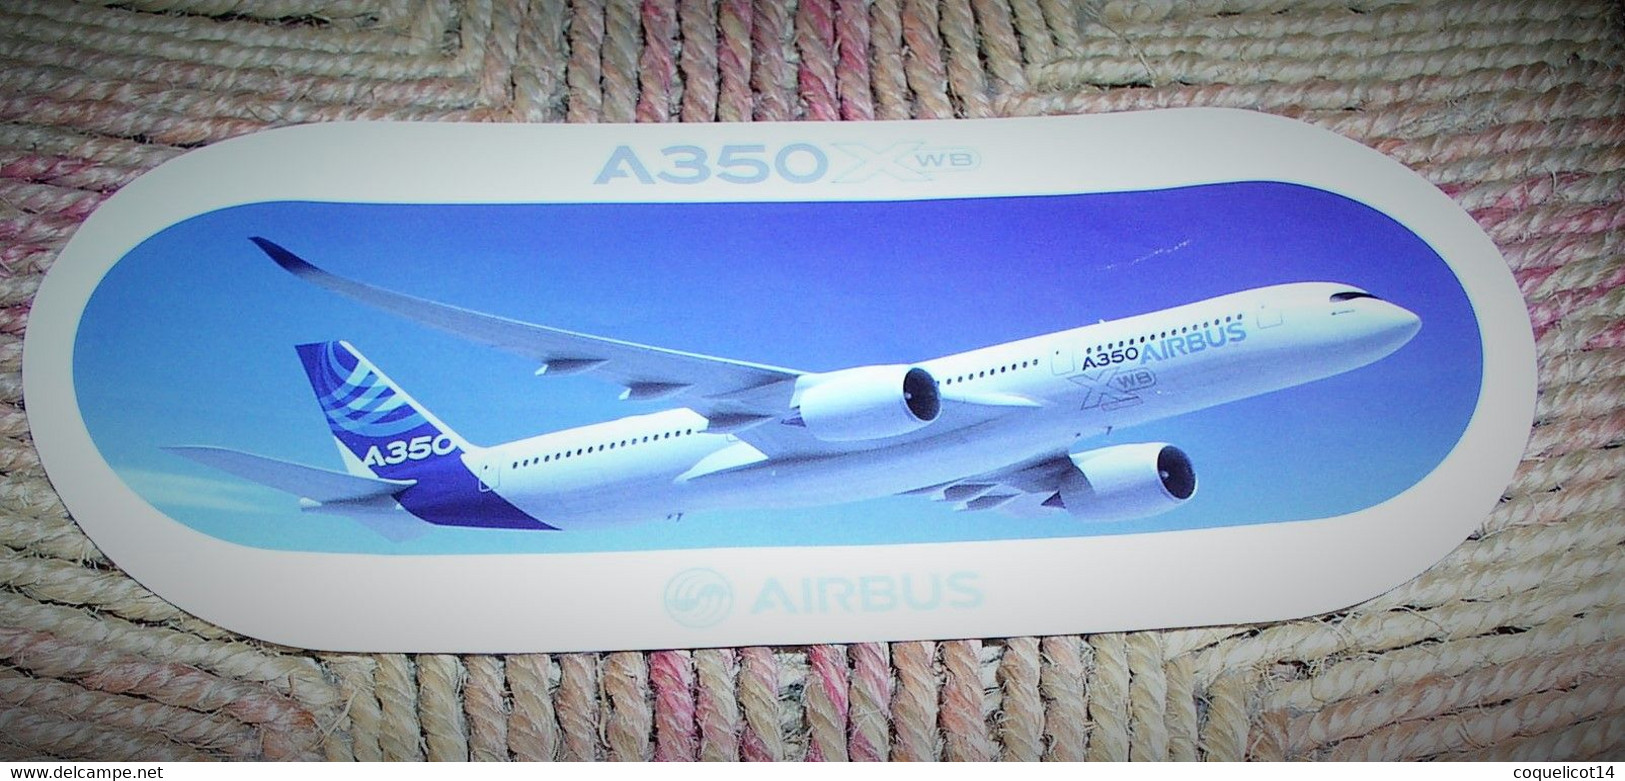 Autocollant Airbus A350 XWB - Aufkleber